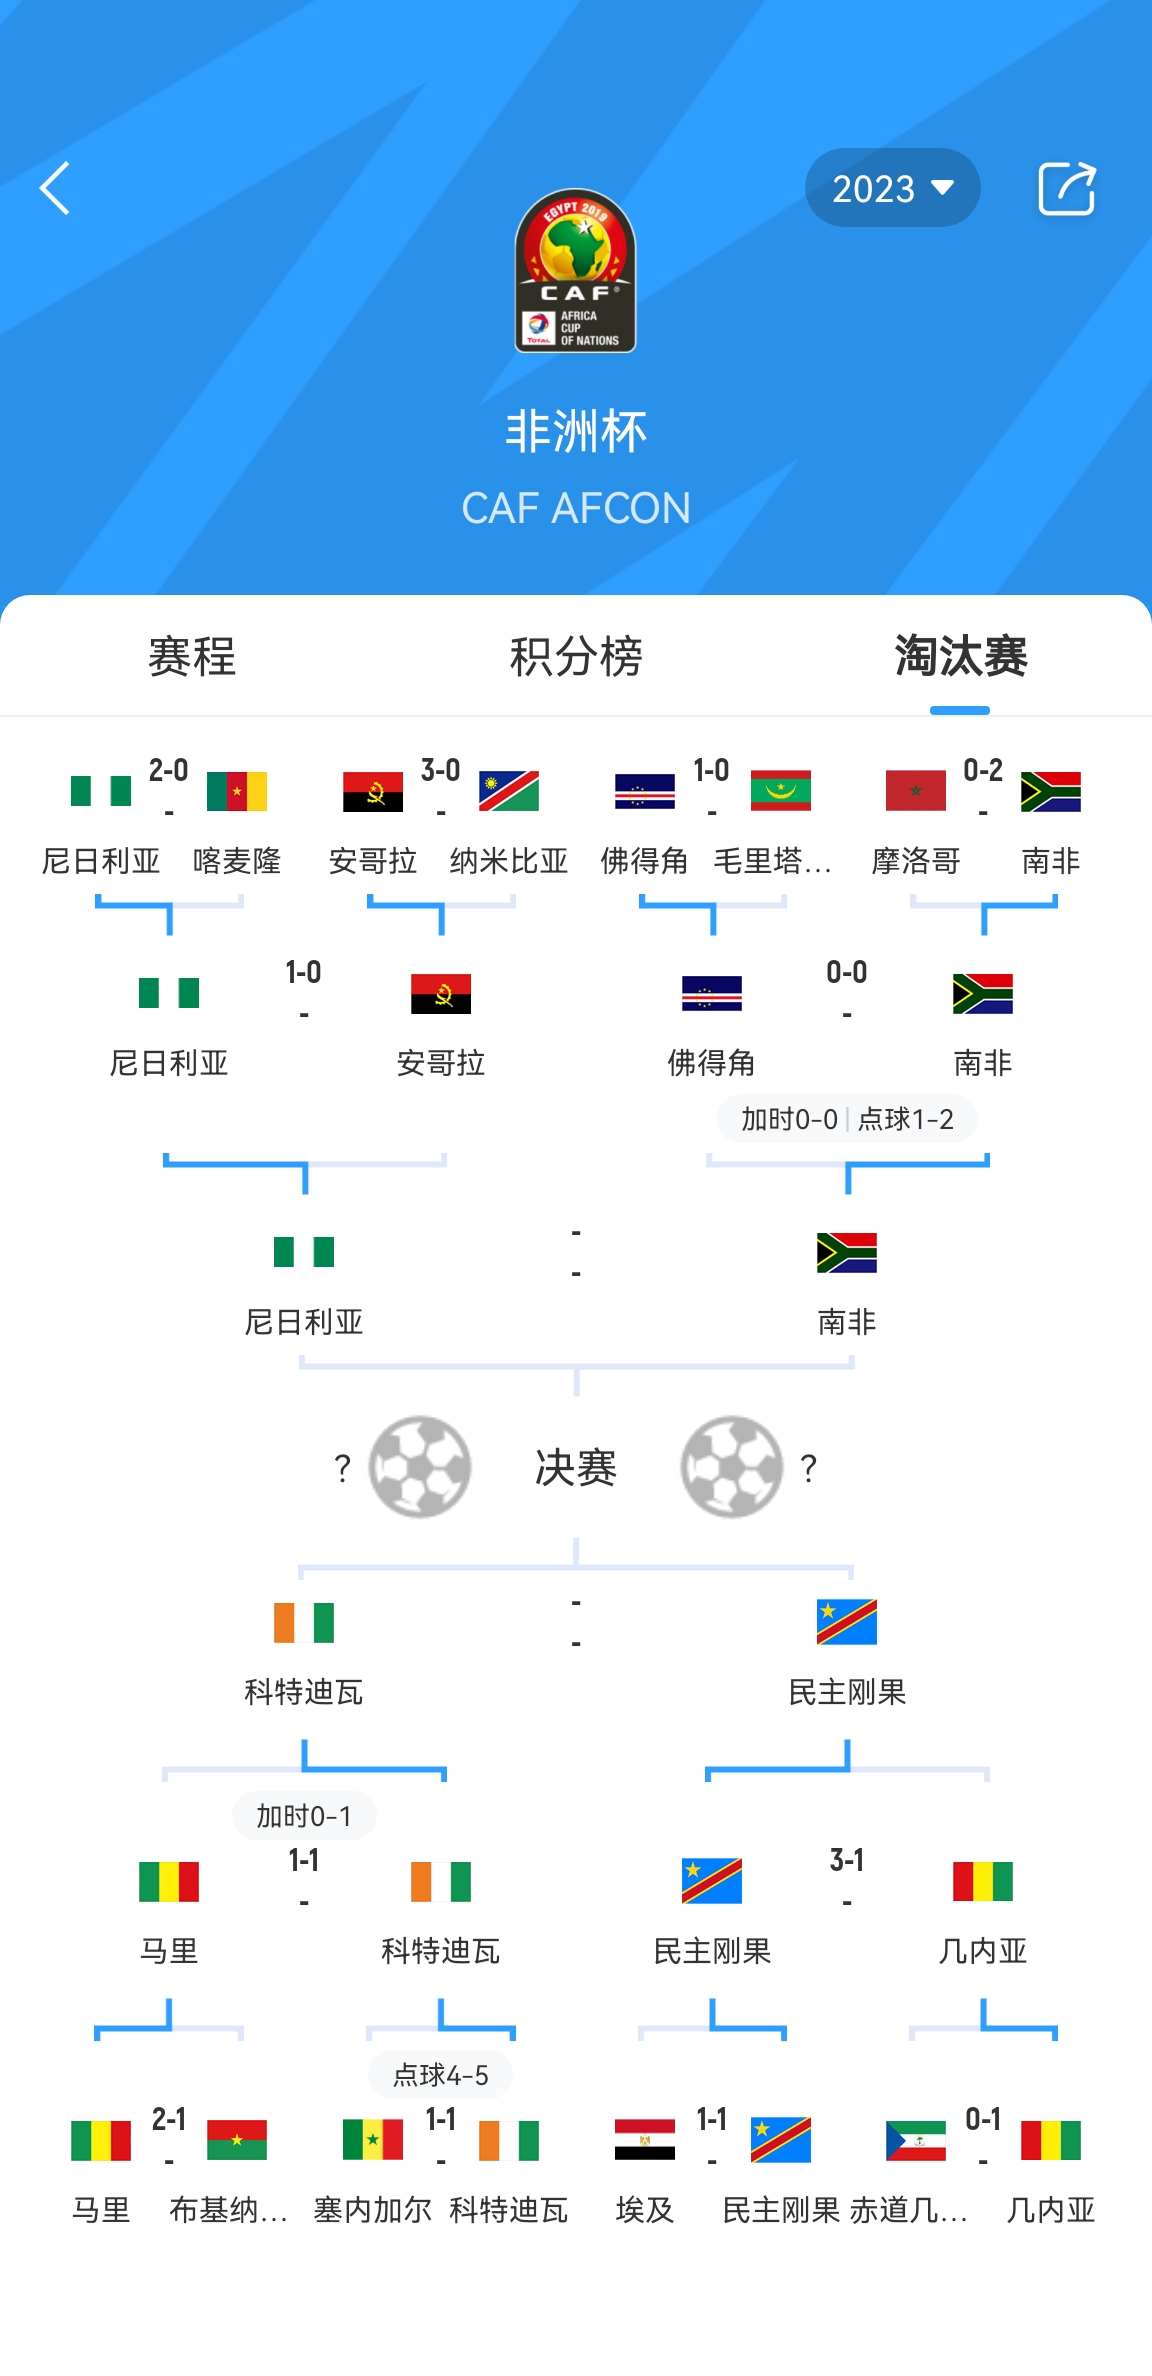 早报：亚洲杯半决赛对阵出炉，卡塔尔将战伊朗、日本出局